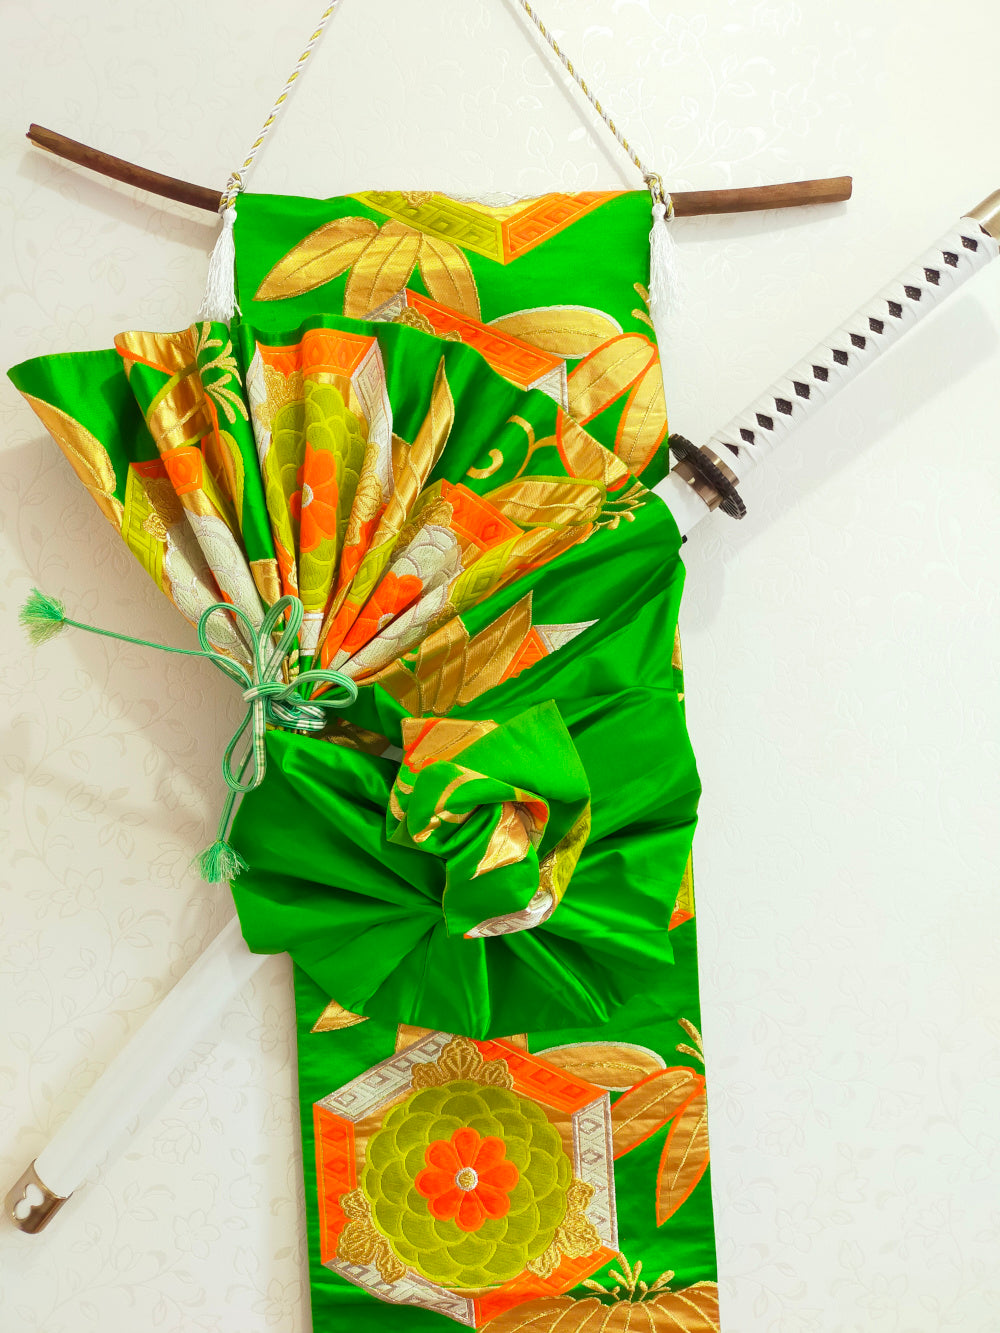 タペストリー  緑菊 笹 吉祥文様 模造刀刀壁掛け 創作掛け軸  和モダンインテリア Tapestry F10